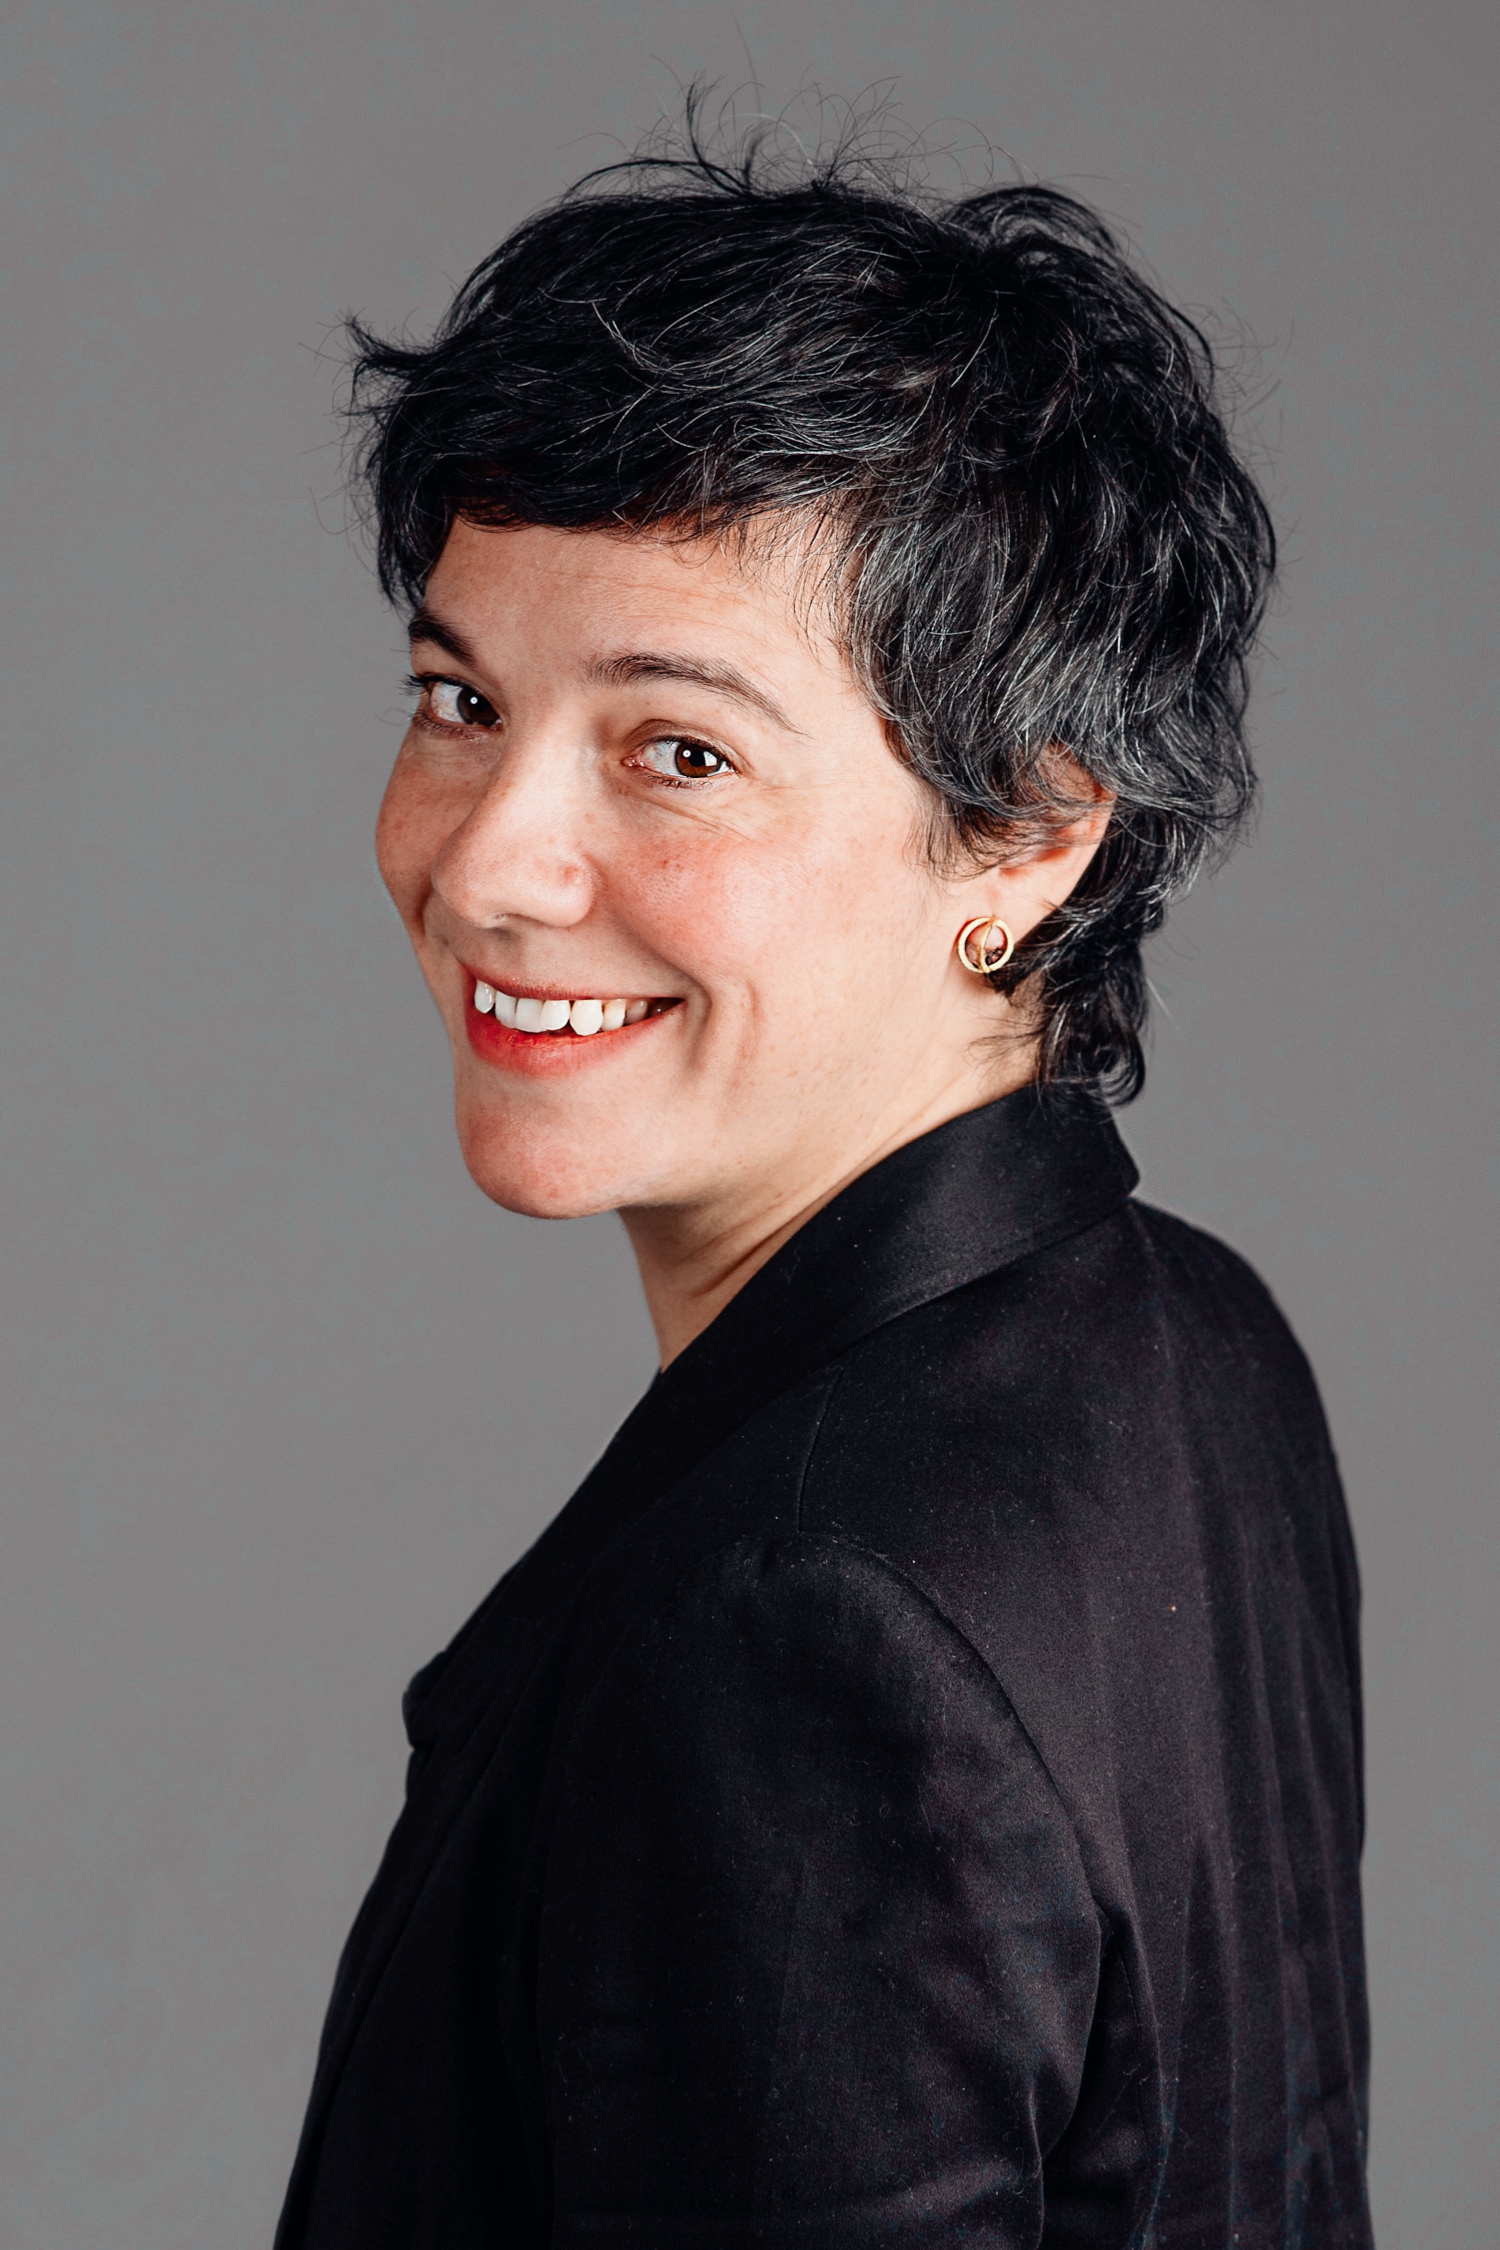 Ms. Dominique Monferrer